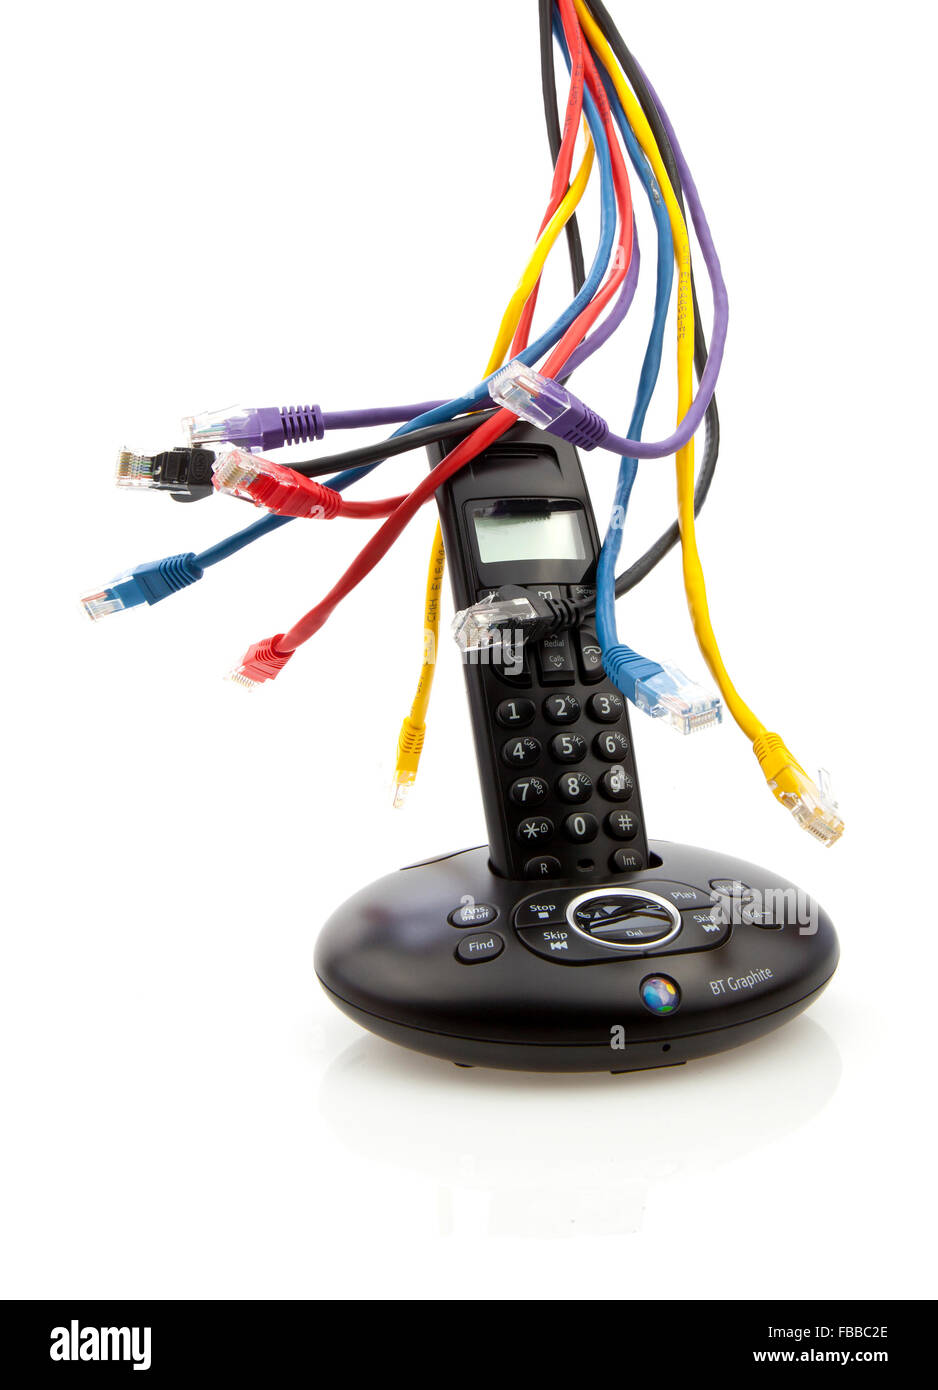 Wireless nero telefono con CAT 5 cavi e base isolata su sfondo bianco Foto Stock